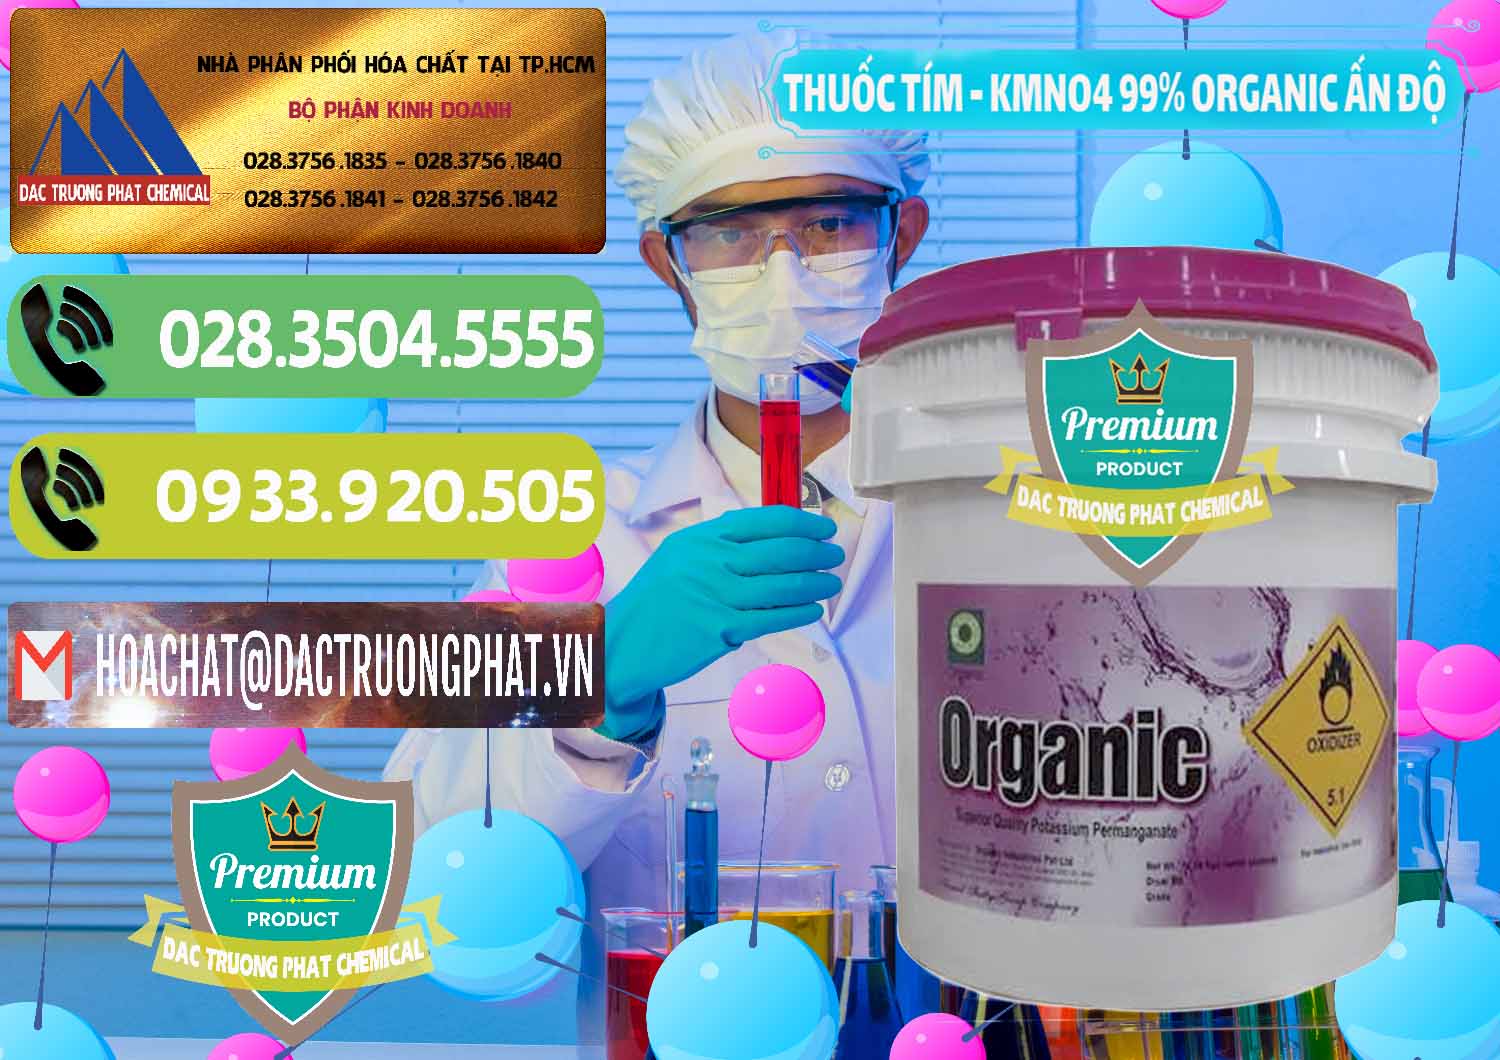 Đơn vị chuyên cung cấp & bán Thuốc Tím - KMNO4 99% Organic Ấn Độ India - 0216 - Cty nhập khẩu & phân phối hóa chất tại TP.HCM - hoachatmientay.vn